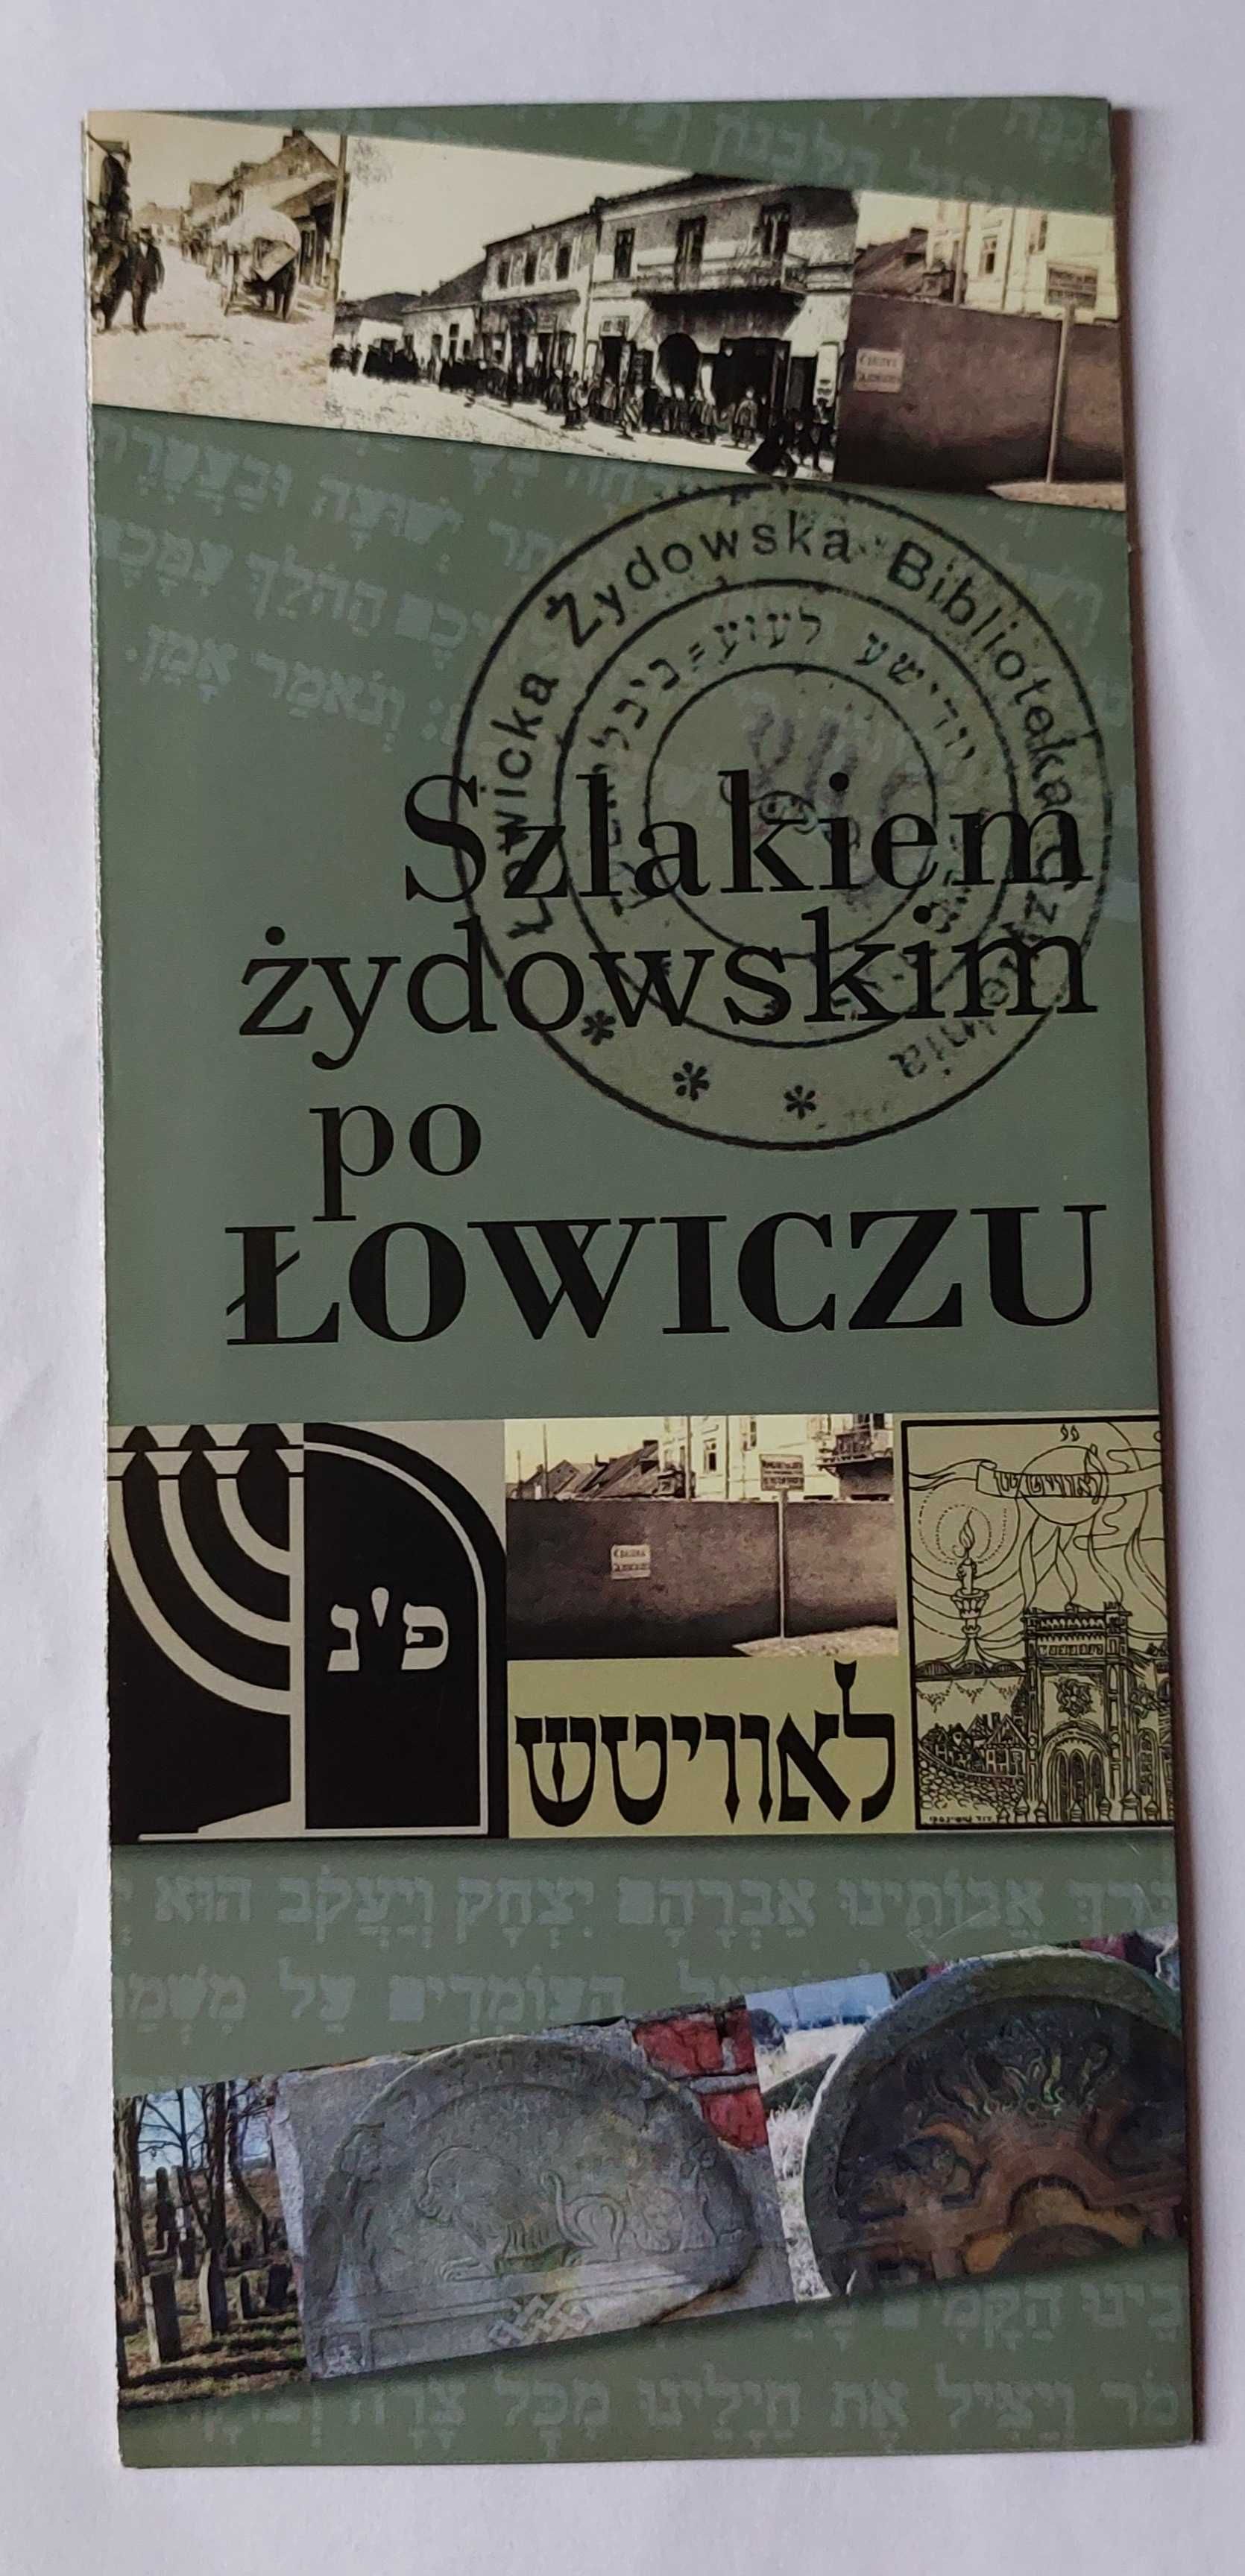 ŁOWICZ | szlakiem żydowskim po Łowiczu